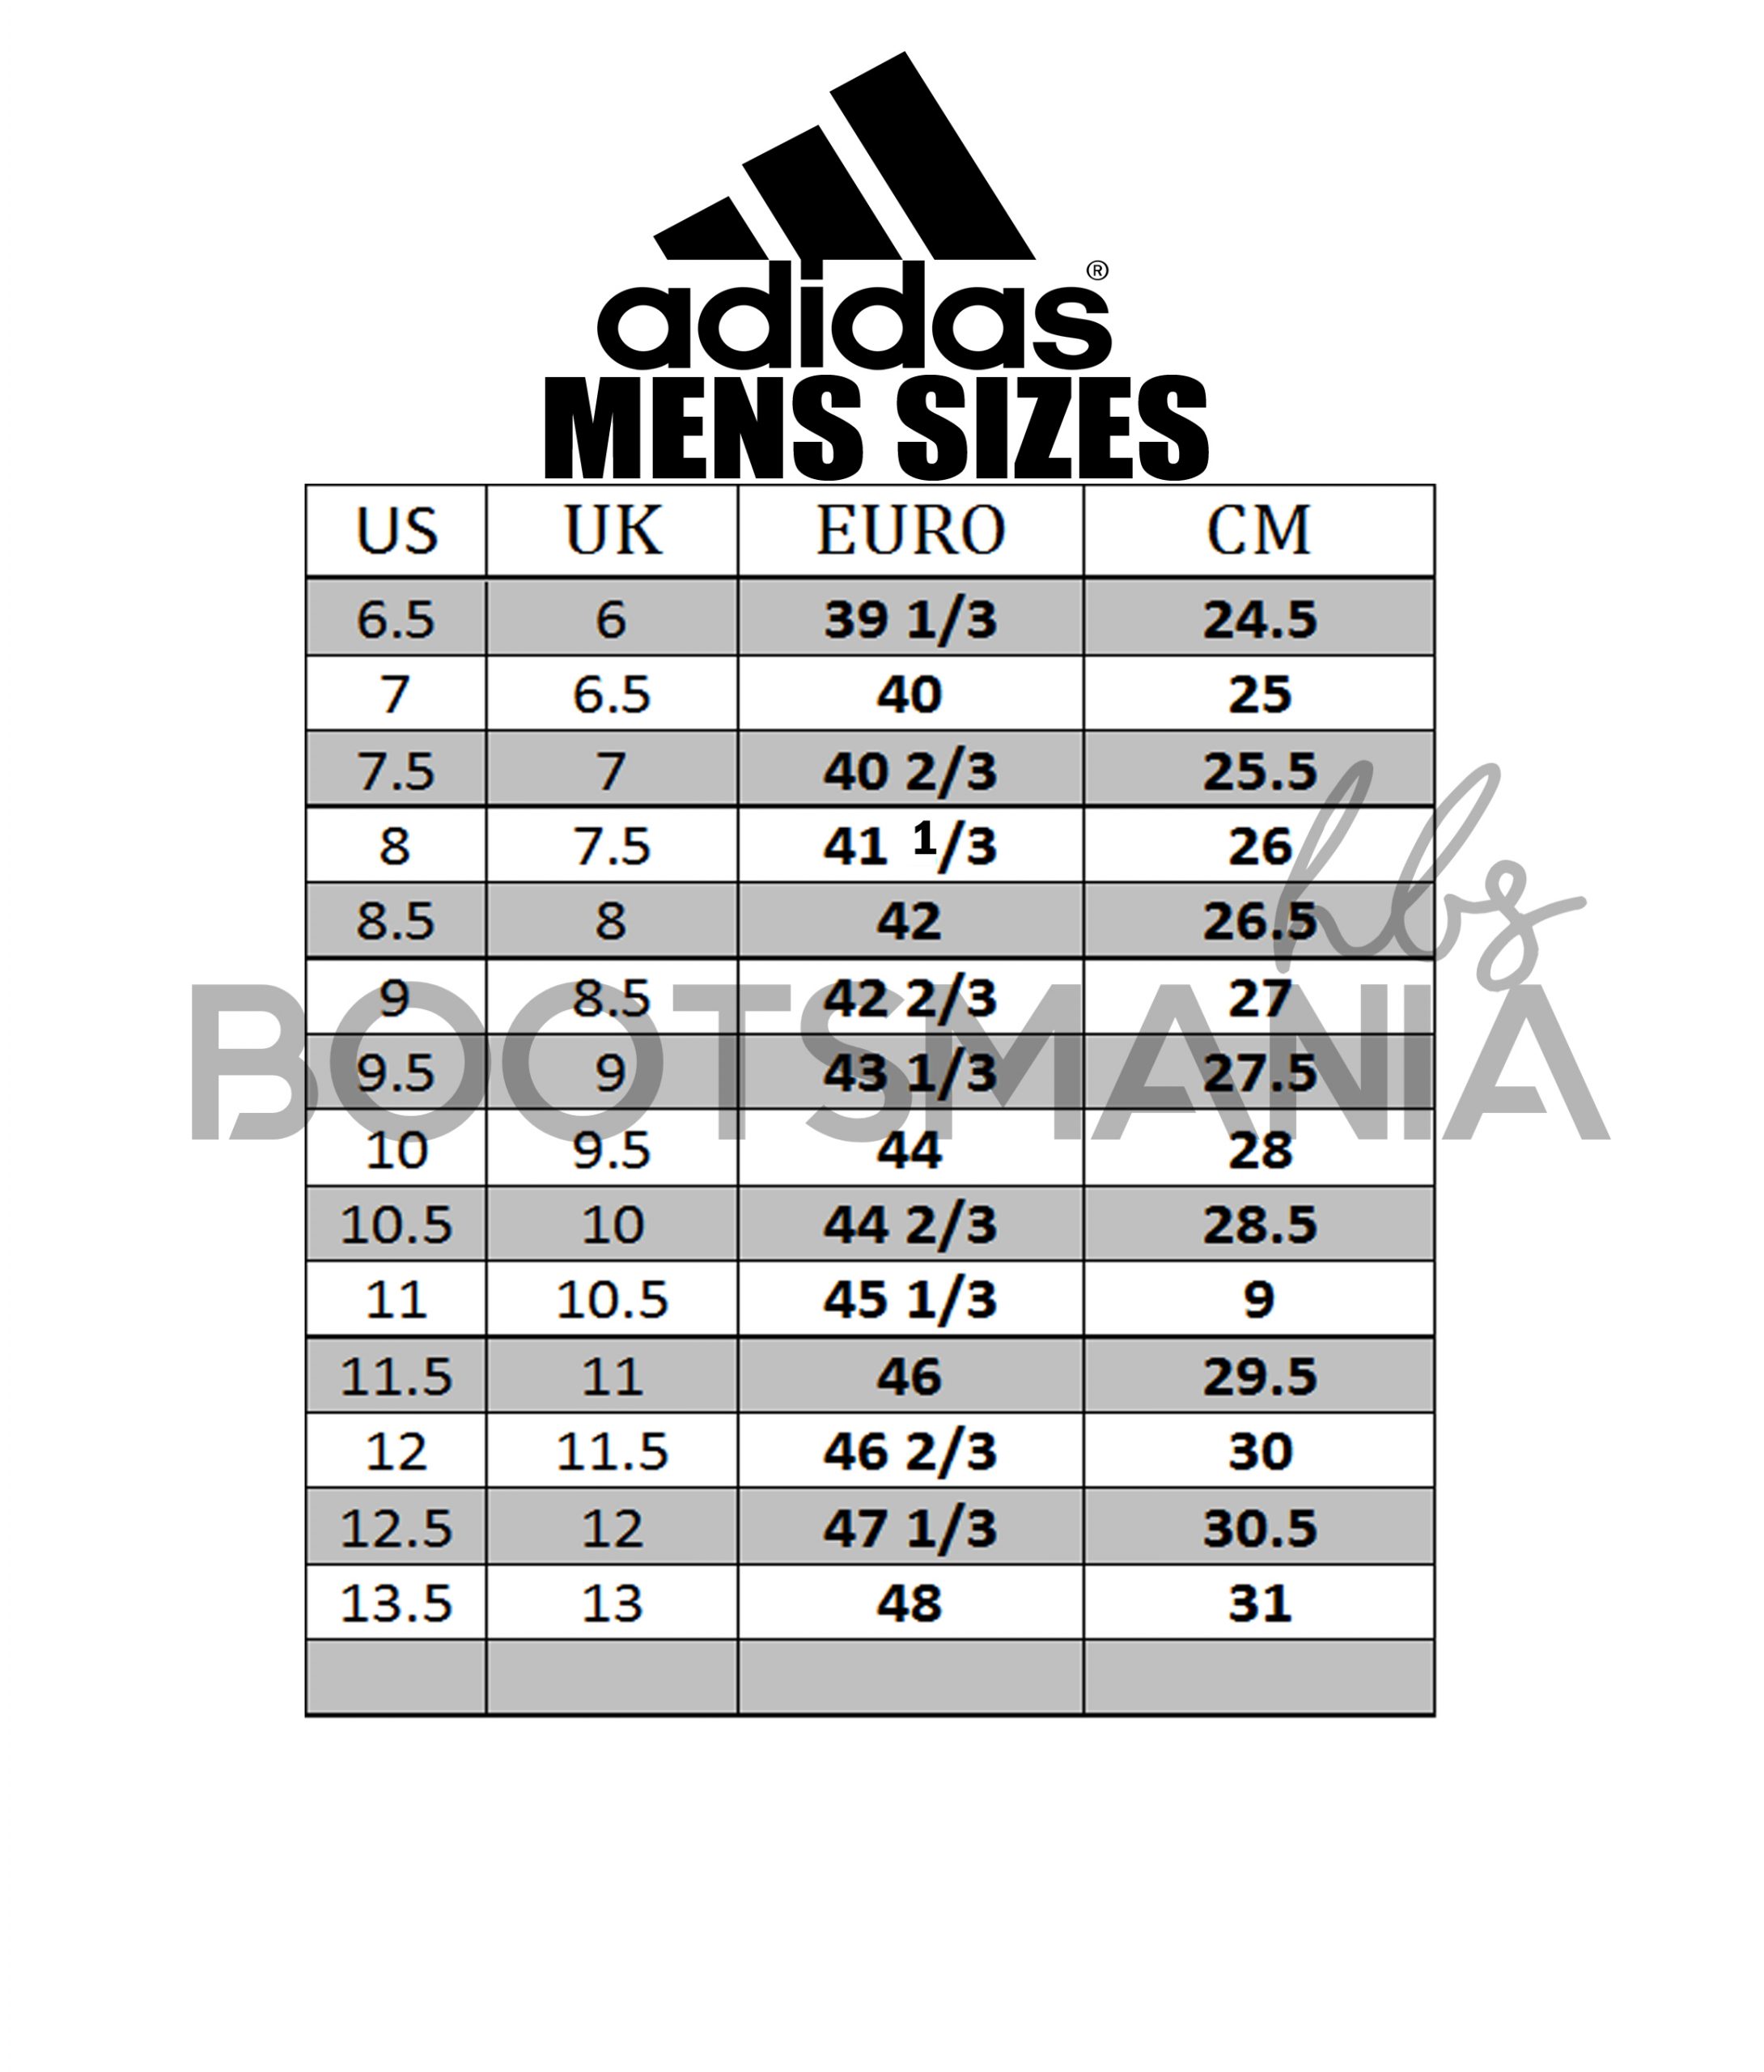 adidas uk 5 size